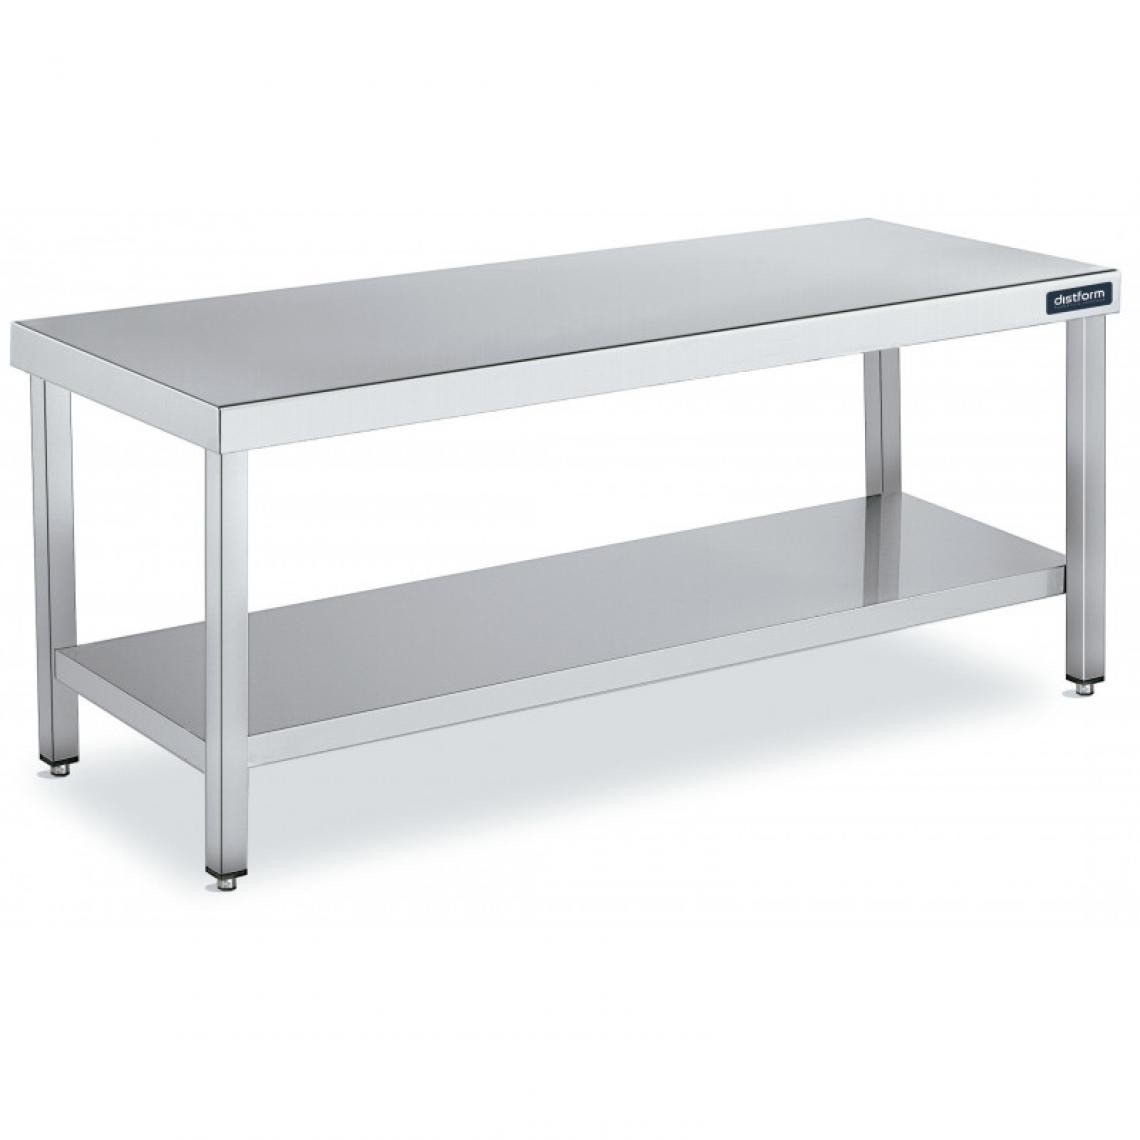 DISTFORM - Table de Travail Centrale Inox avec 1 Étagère - Gamme 600 - Hauteur 600 - Distform - Acier inoxydable1500x600 - Tables à manger